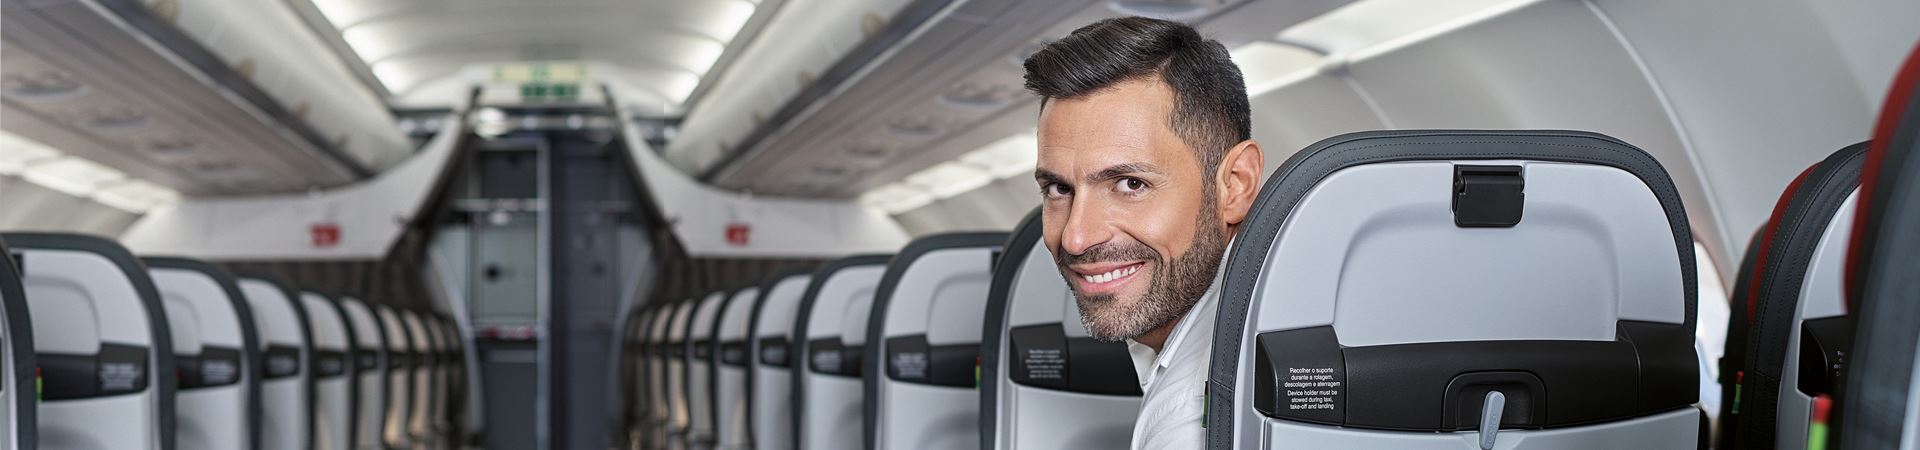 Plan eines Korridors und der Rückseite der Sitze auf der rechten Seite eines TAP-Flugzeugs. Auf dem letzten sichtbaren Platz sitzt ein braungebrannter Kaukasier. Er trägt ein weißes Hemd und blickt lächelnd zurück, direkt in die Kamera.